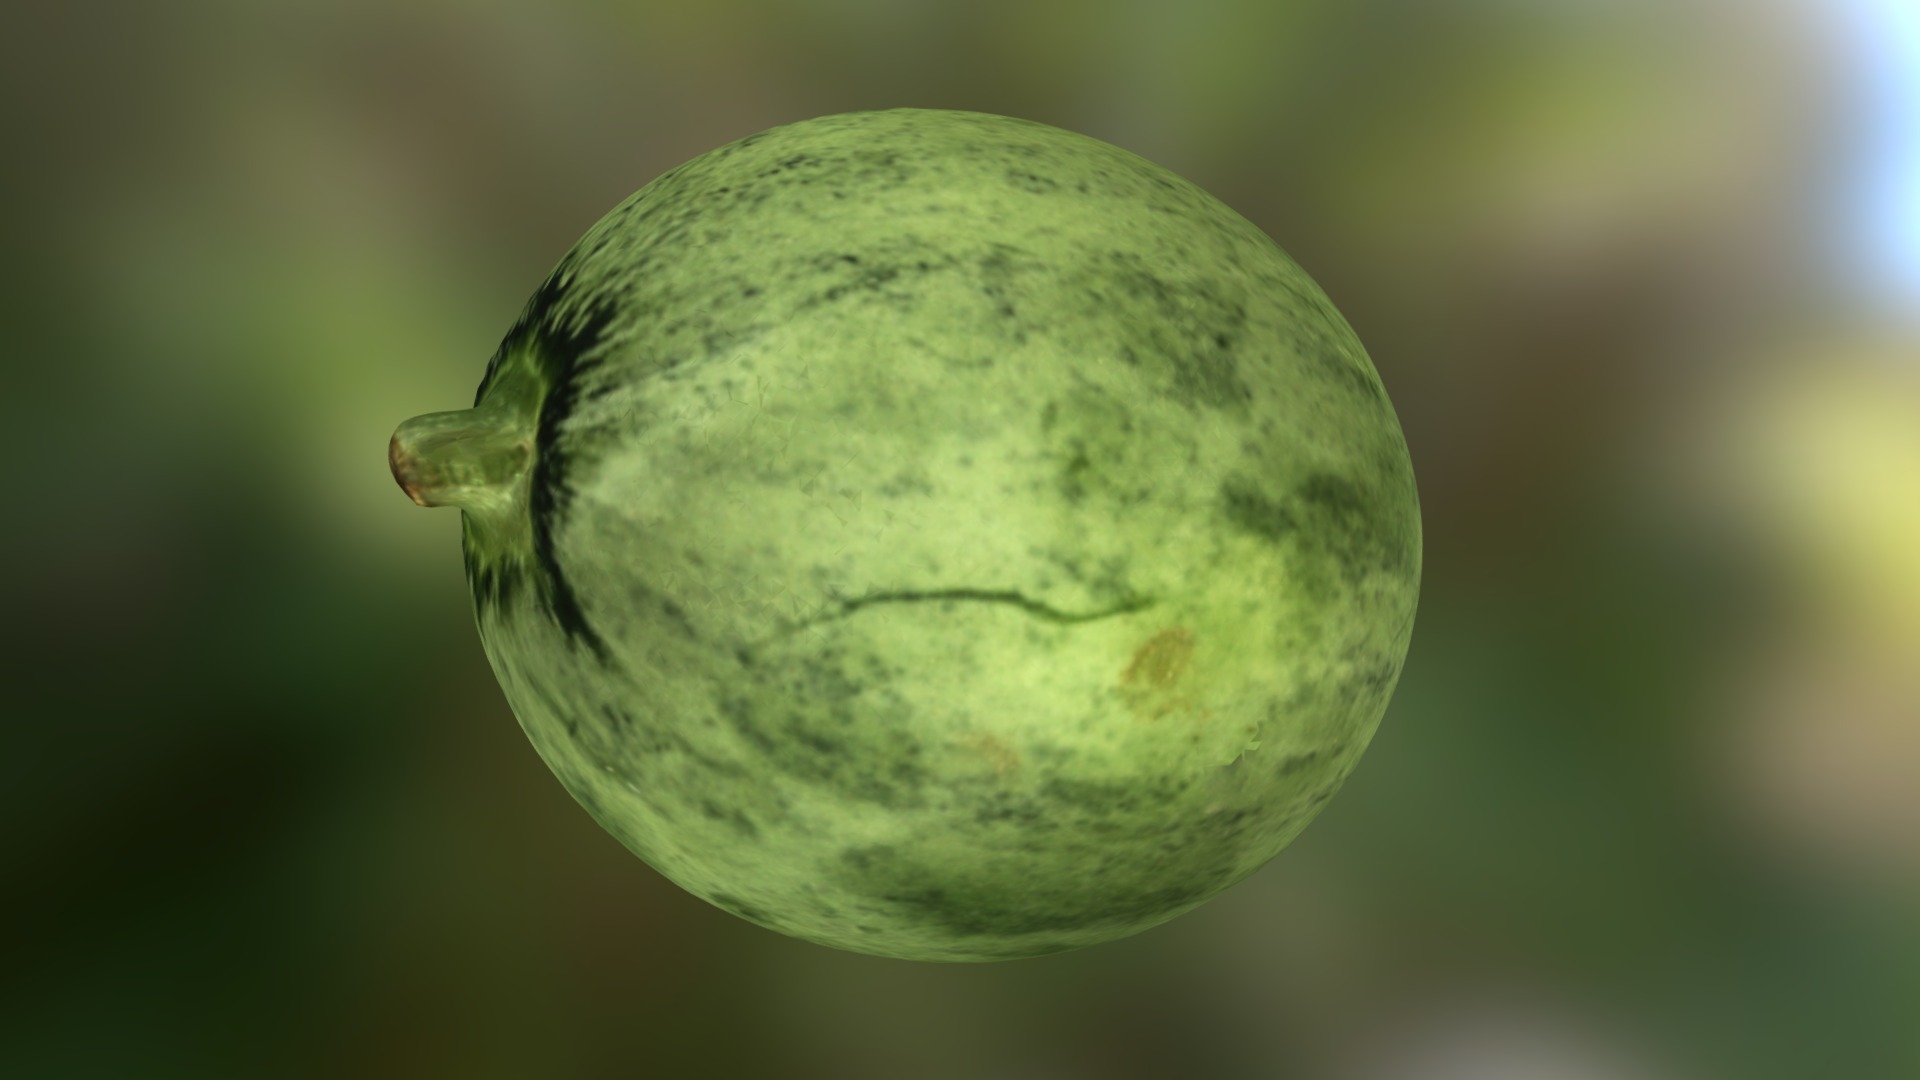 The Tekka Melon